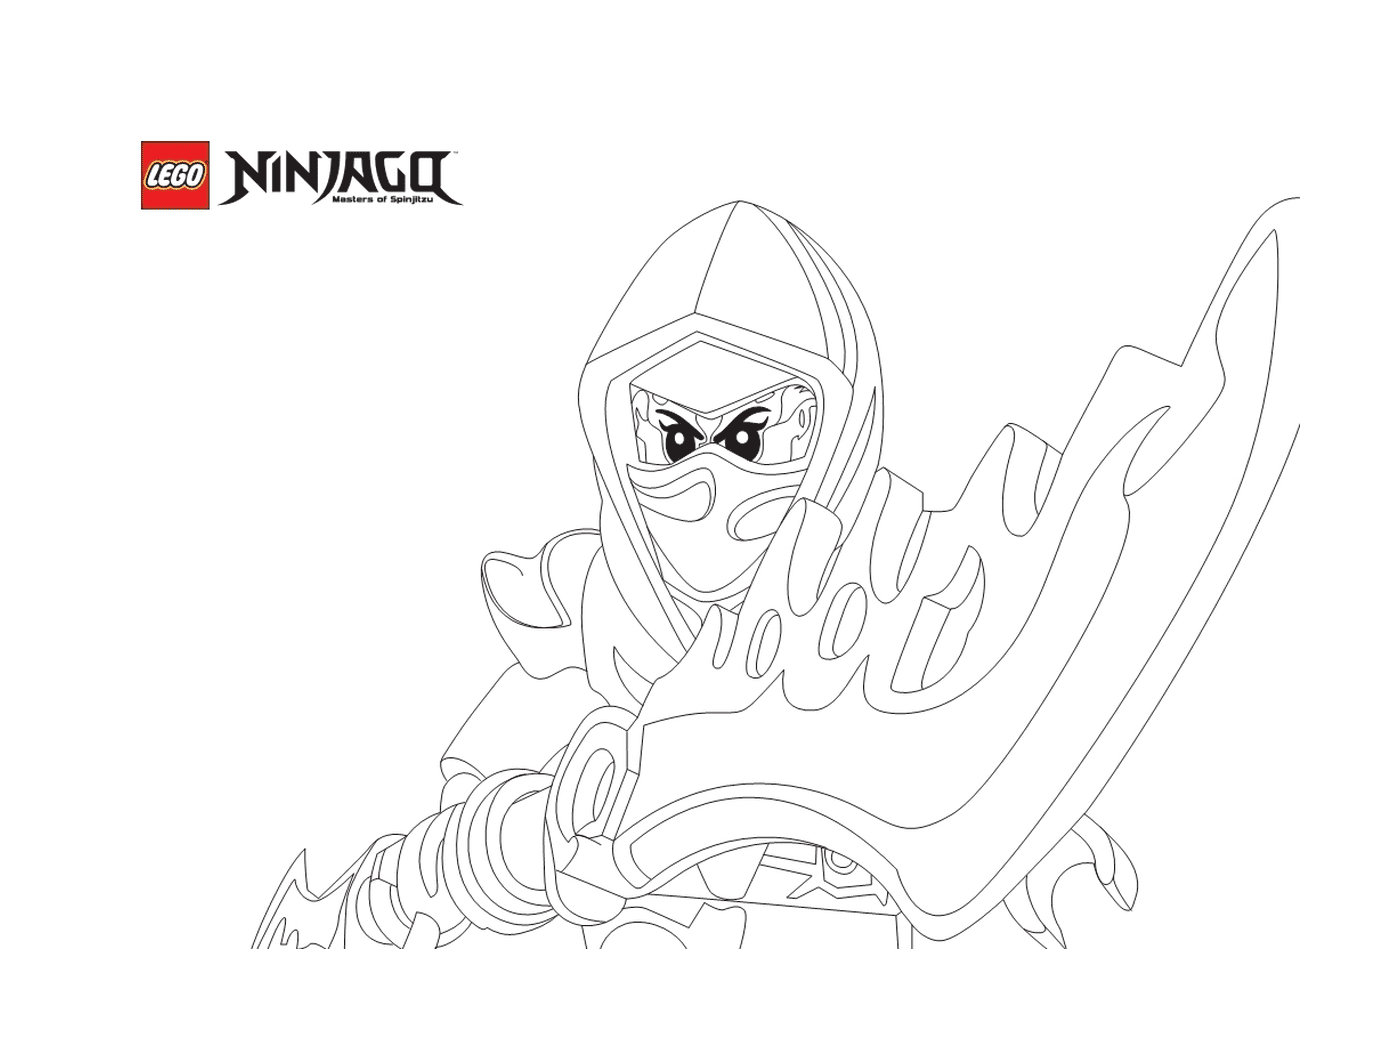  Ninjago con espada lista para atacar 